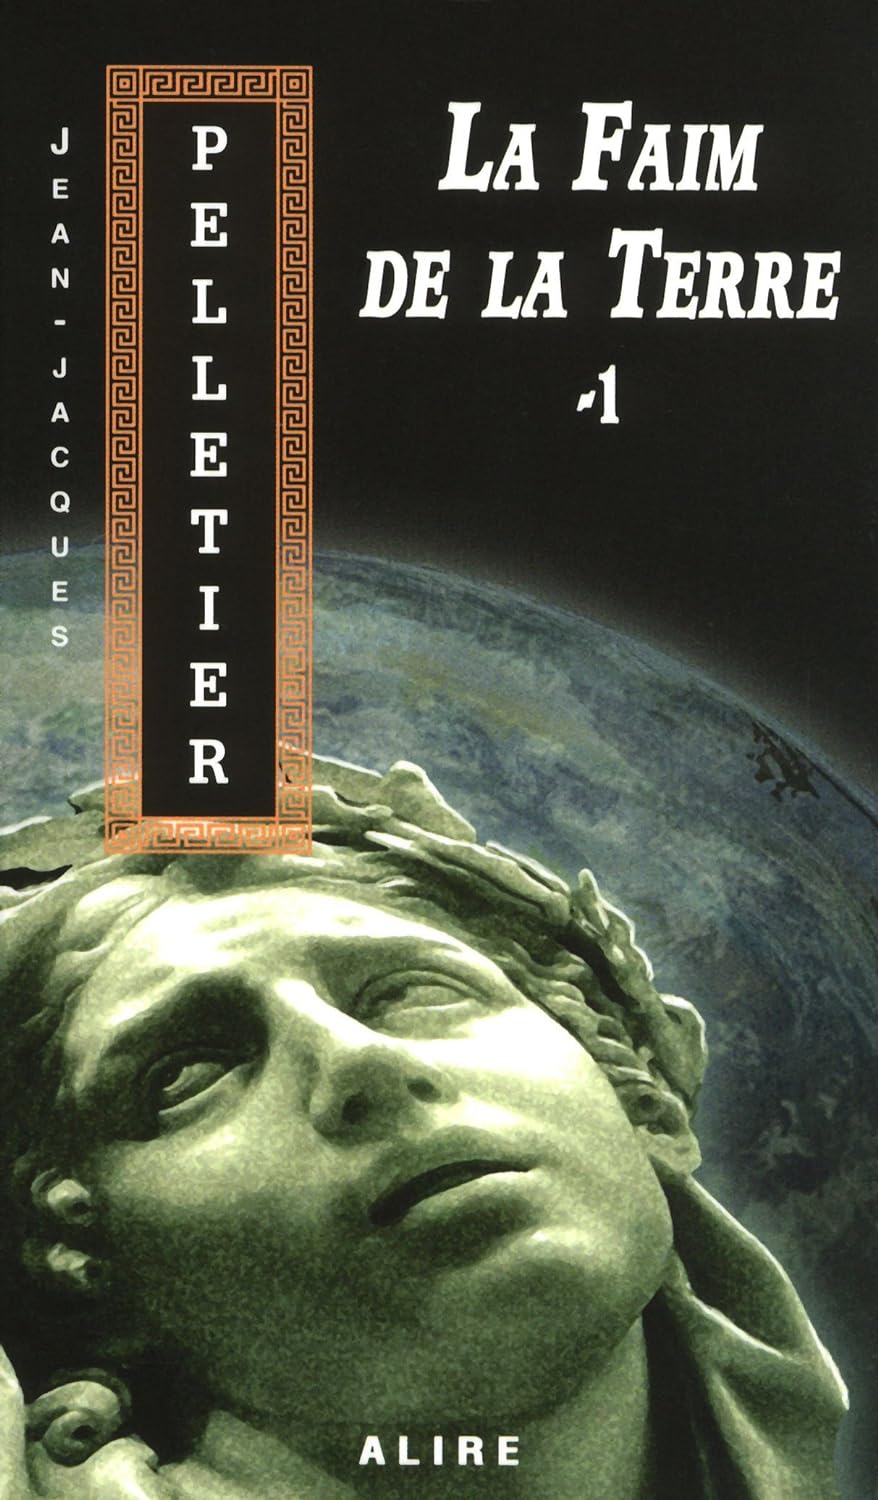 La faim de la Terre # 1 - Jean-Jacques Pelletier